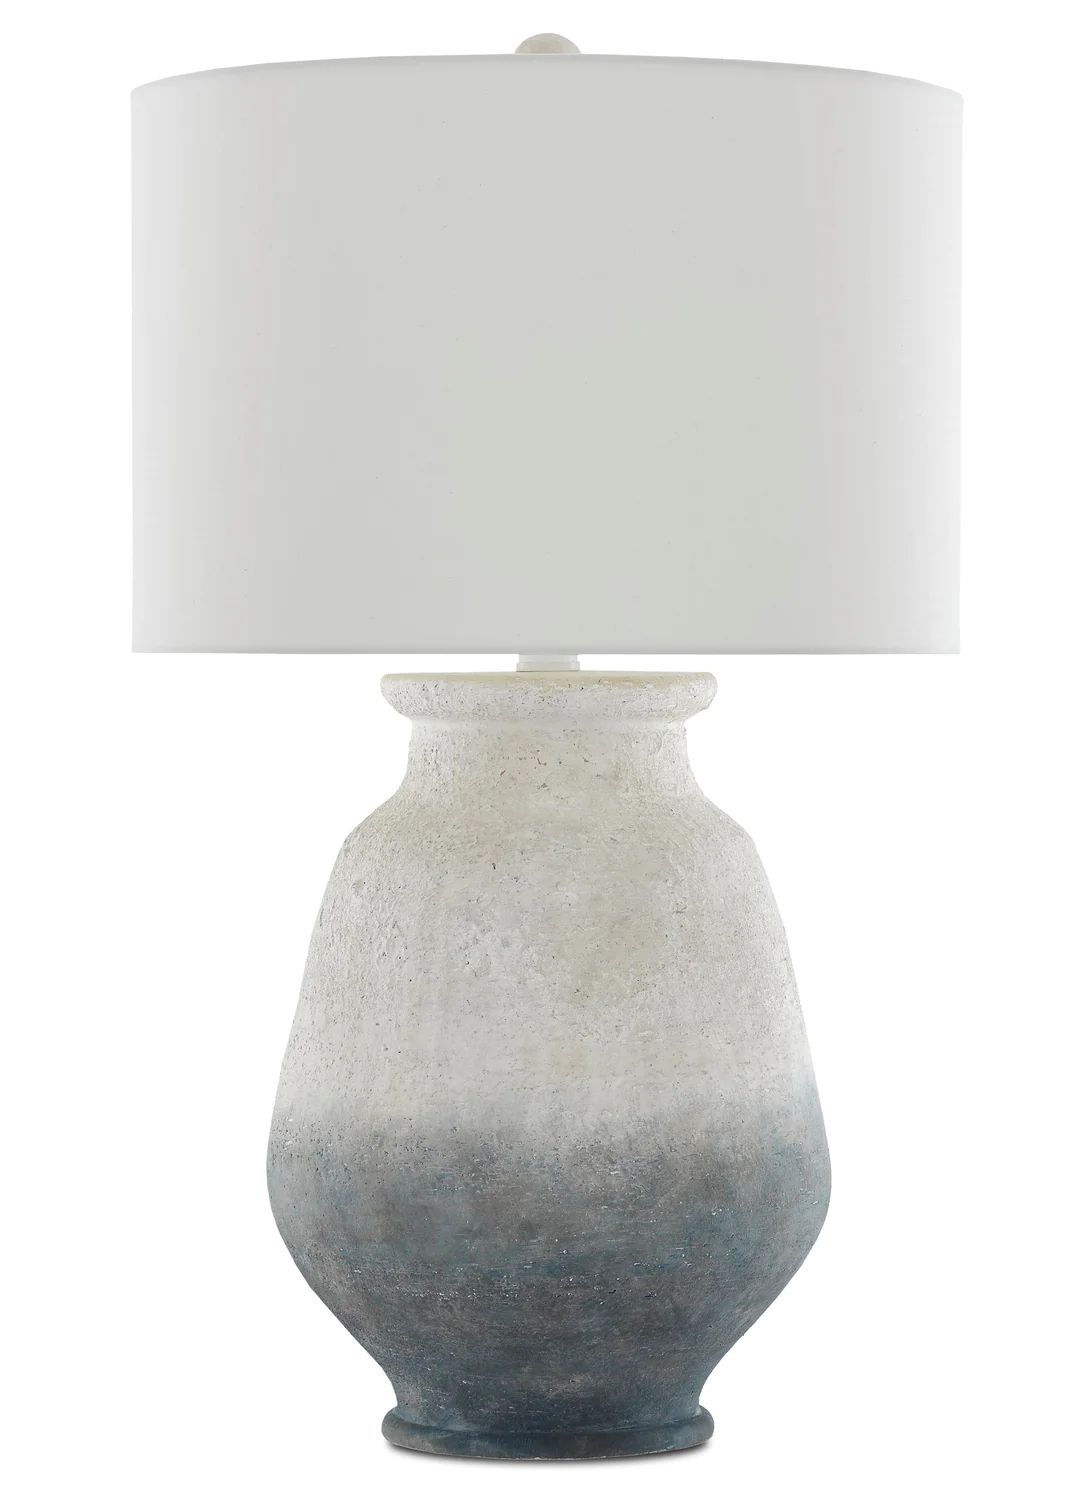 Cazalet Table Lamp | Burke Decor